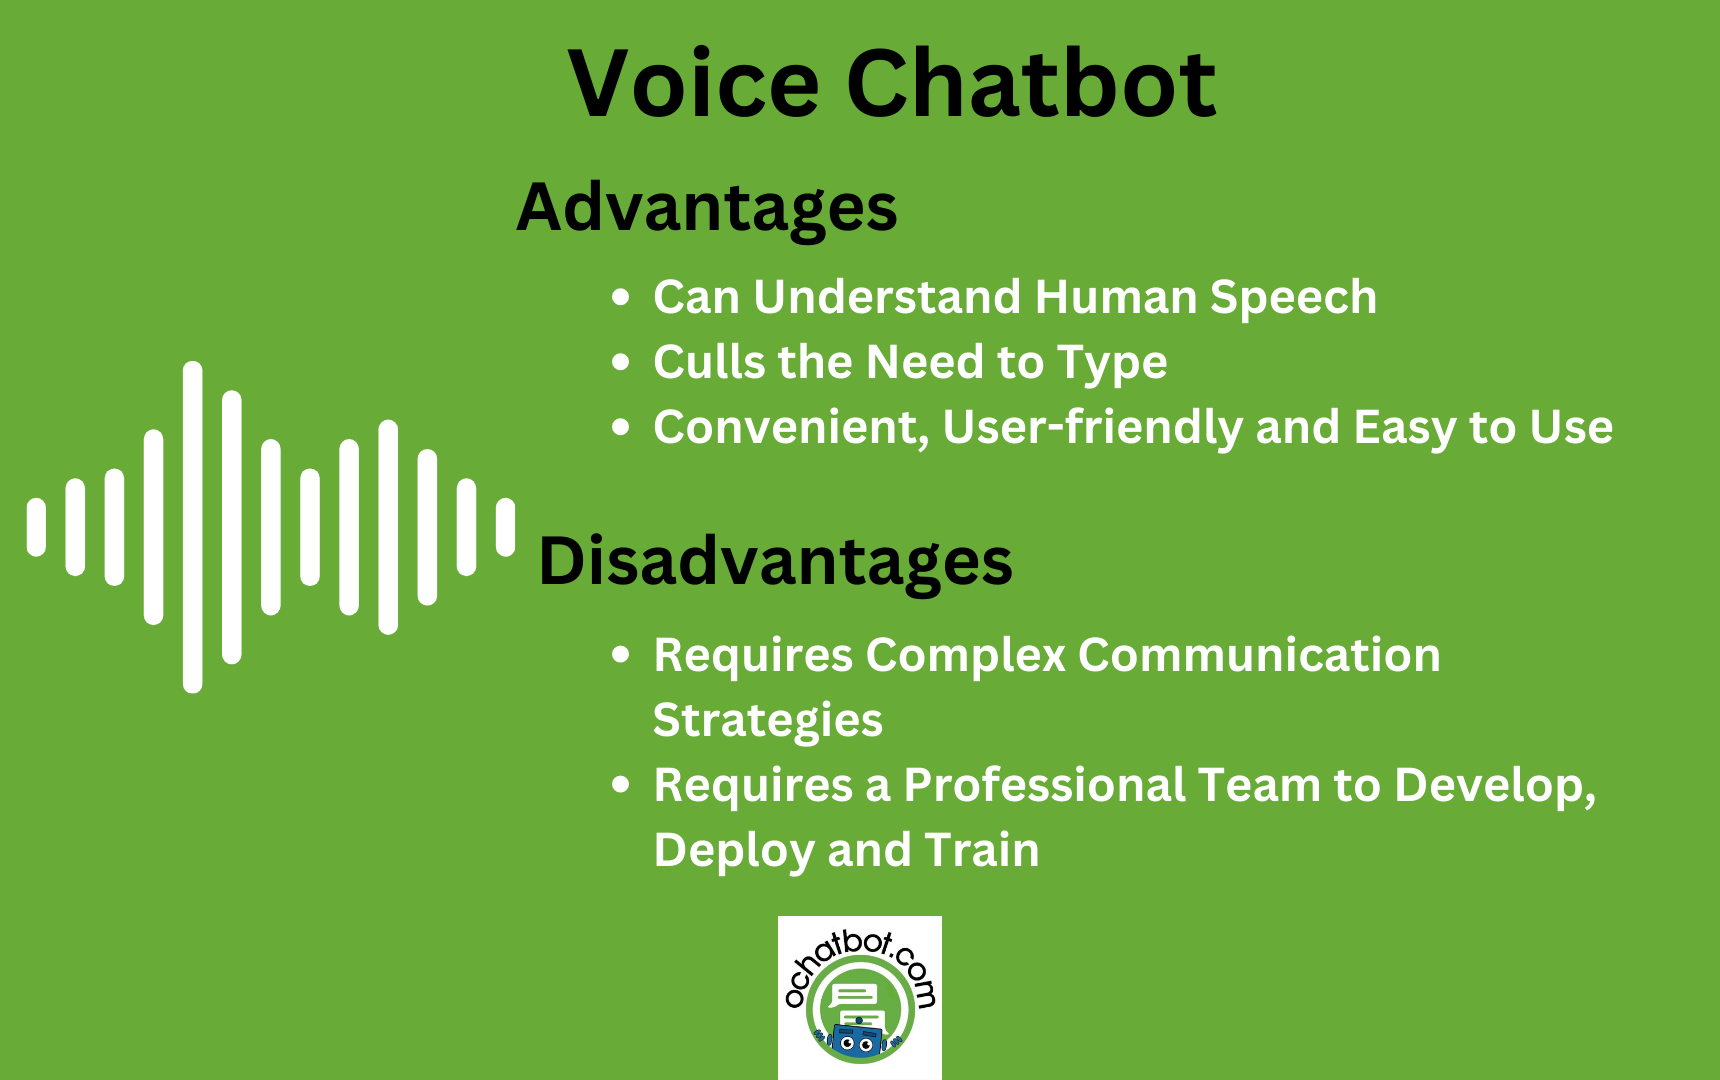 Voice Chatbots